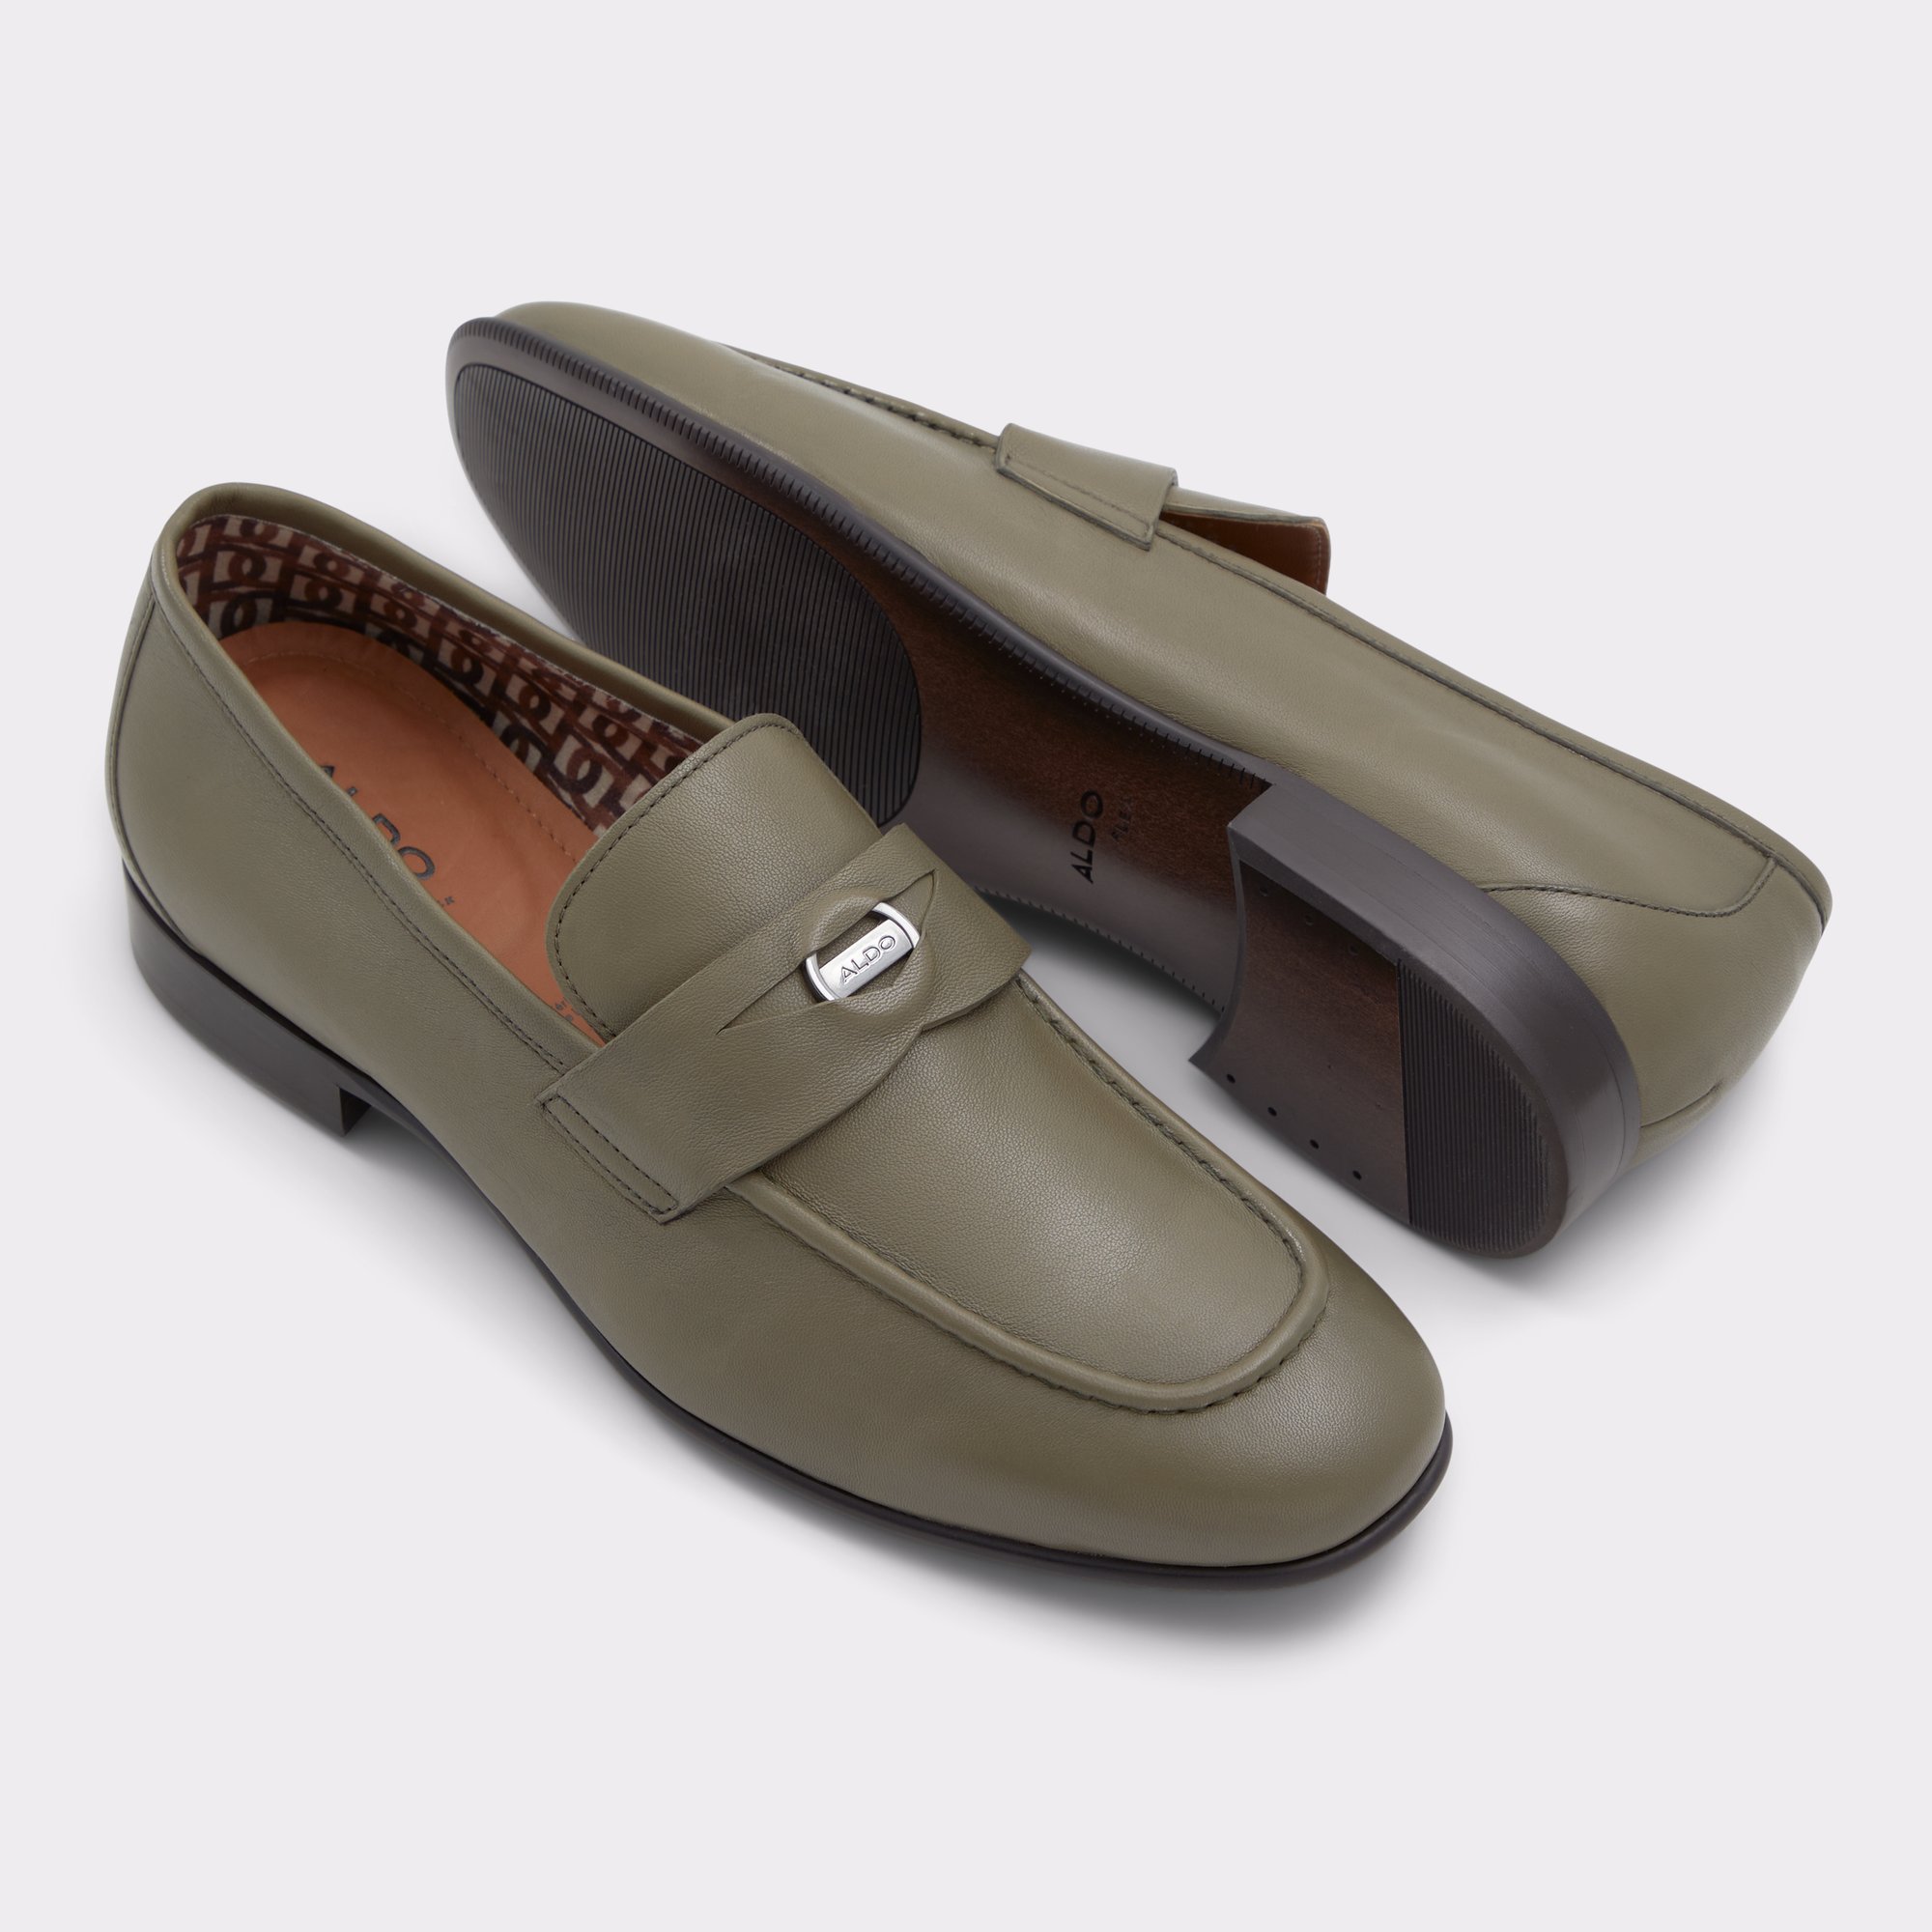 Esquire Brown Men's Dress Shoes ALDO US, 56% OFF